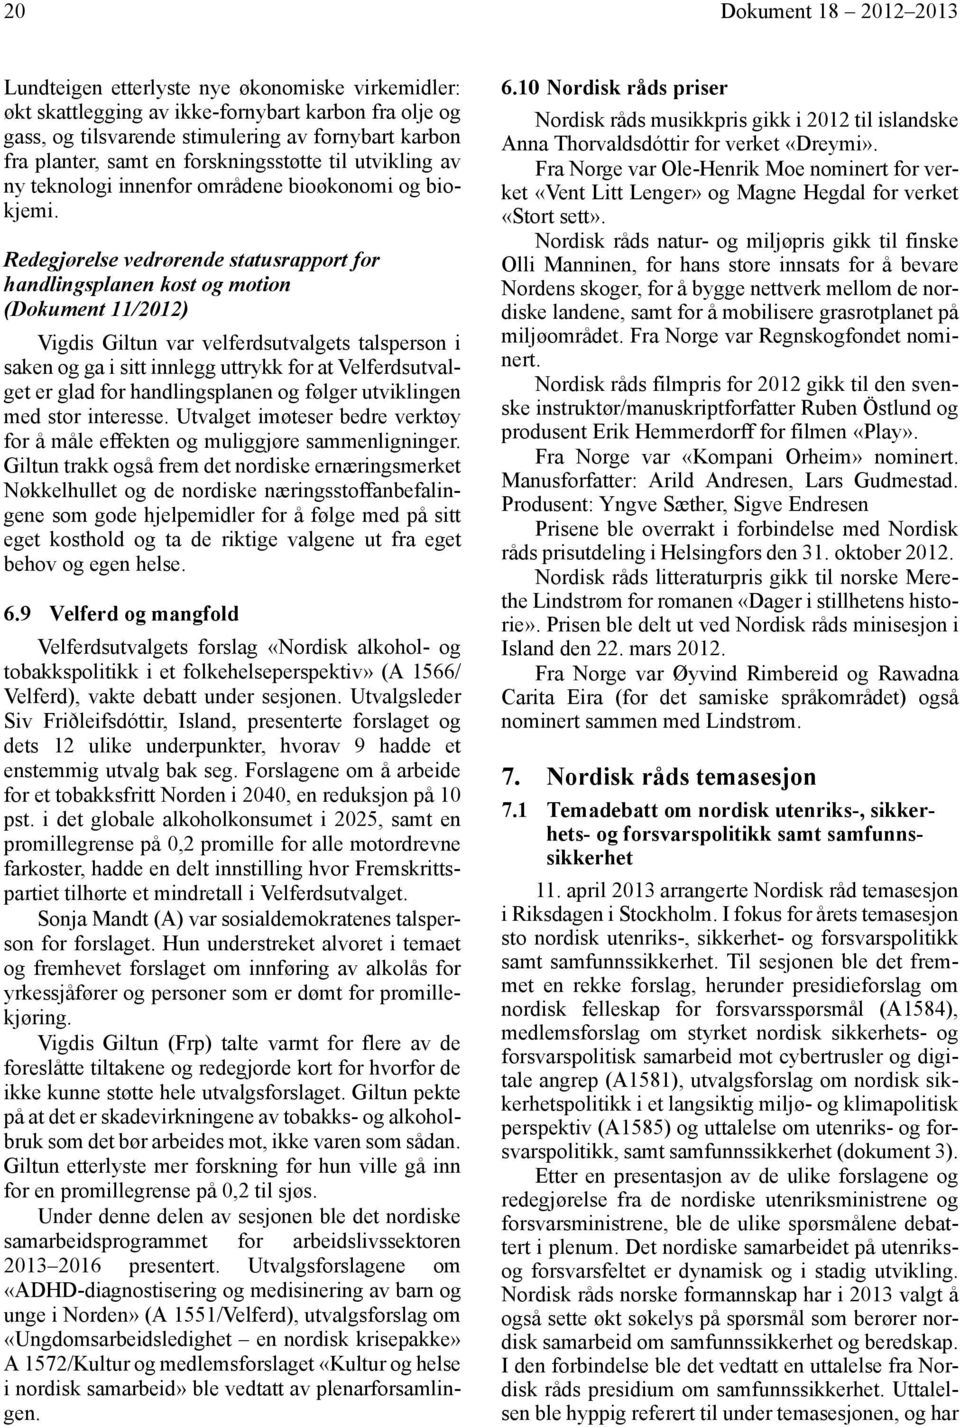 Redegjørelse vedrørende statusrapport for handlingsplanen kost og motion (Dokument 11/2012) Vigdis Giltun var velferdsutvalgets talsperson i saken og ga i sitt innlegg uttrykk for at Velferdsutvalget